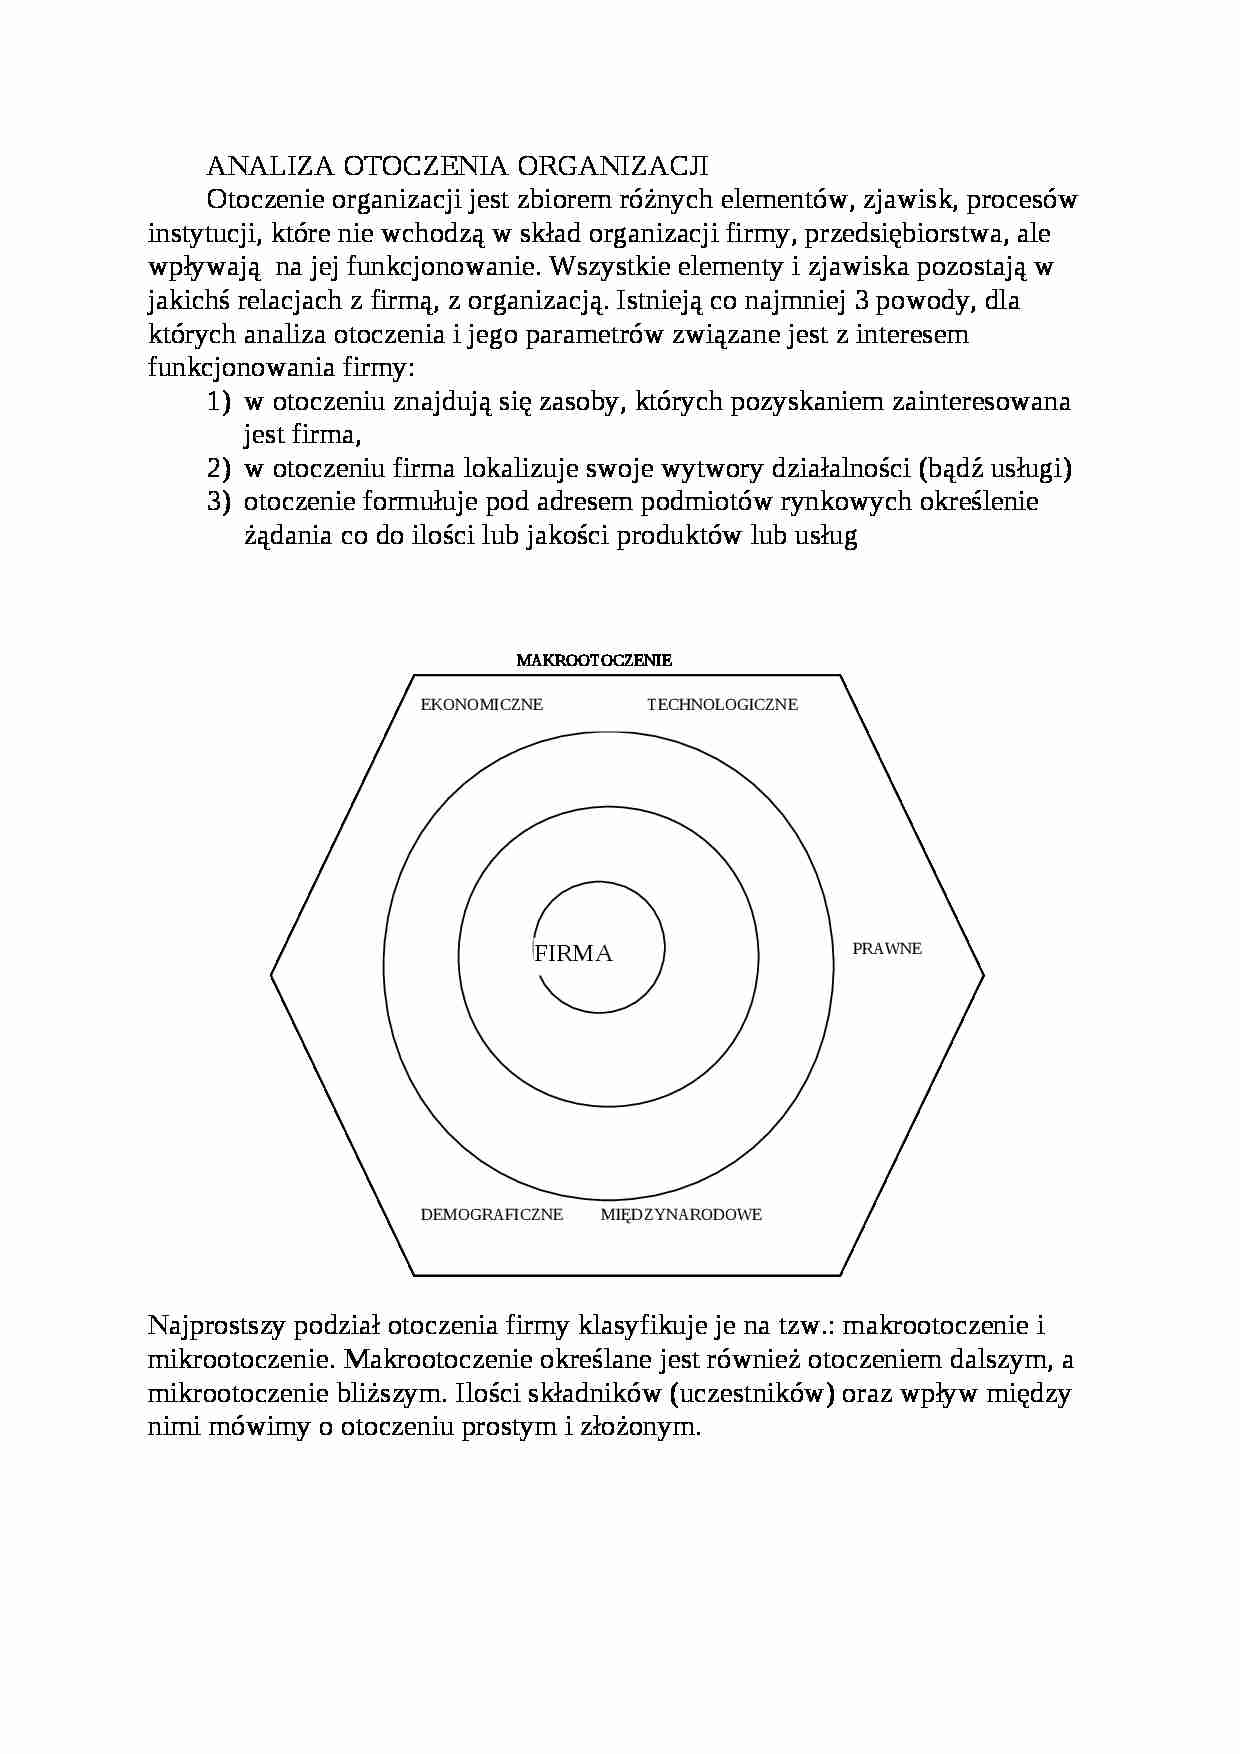 Analiza otoczenia organizacji - Makrootoczenie - strona 1